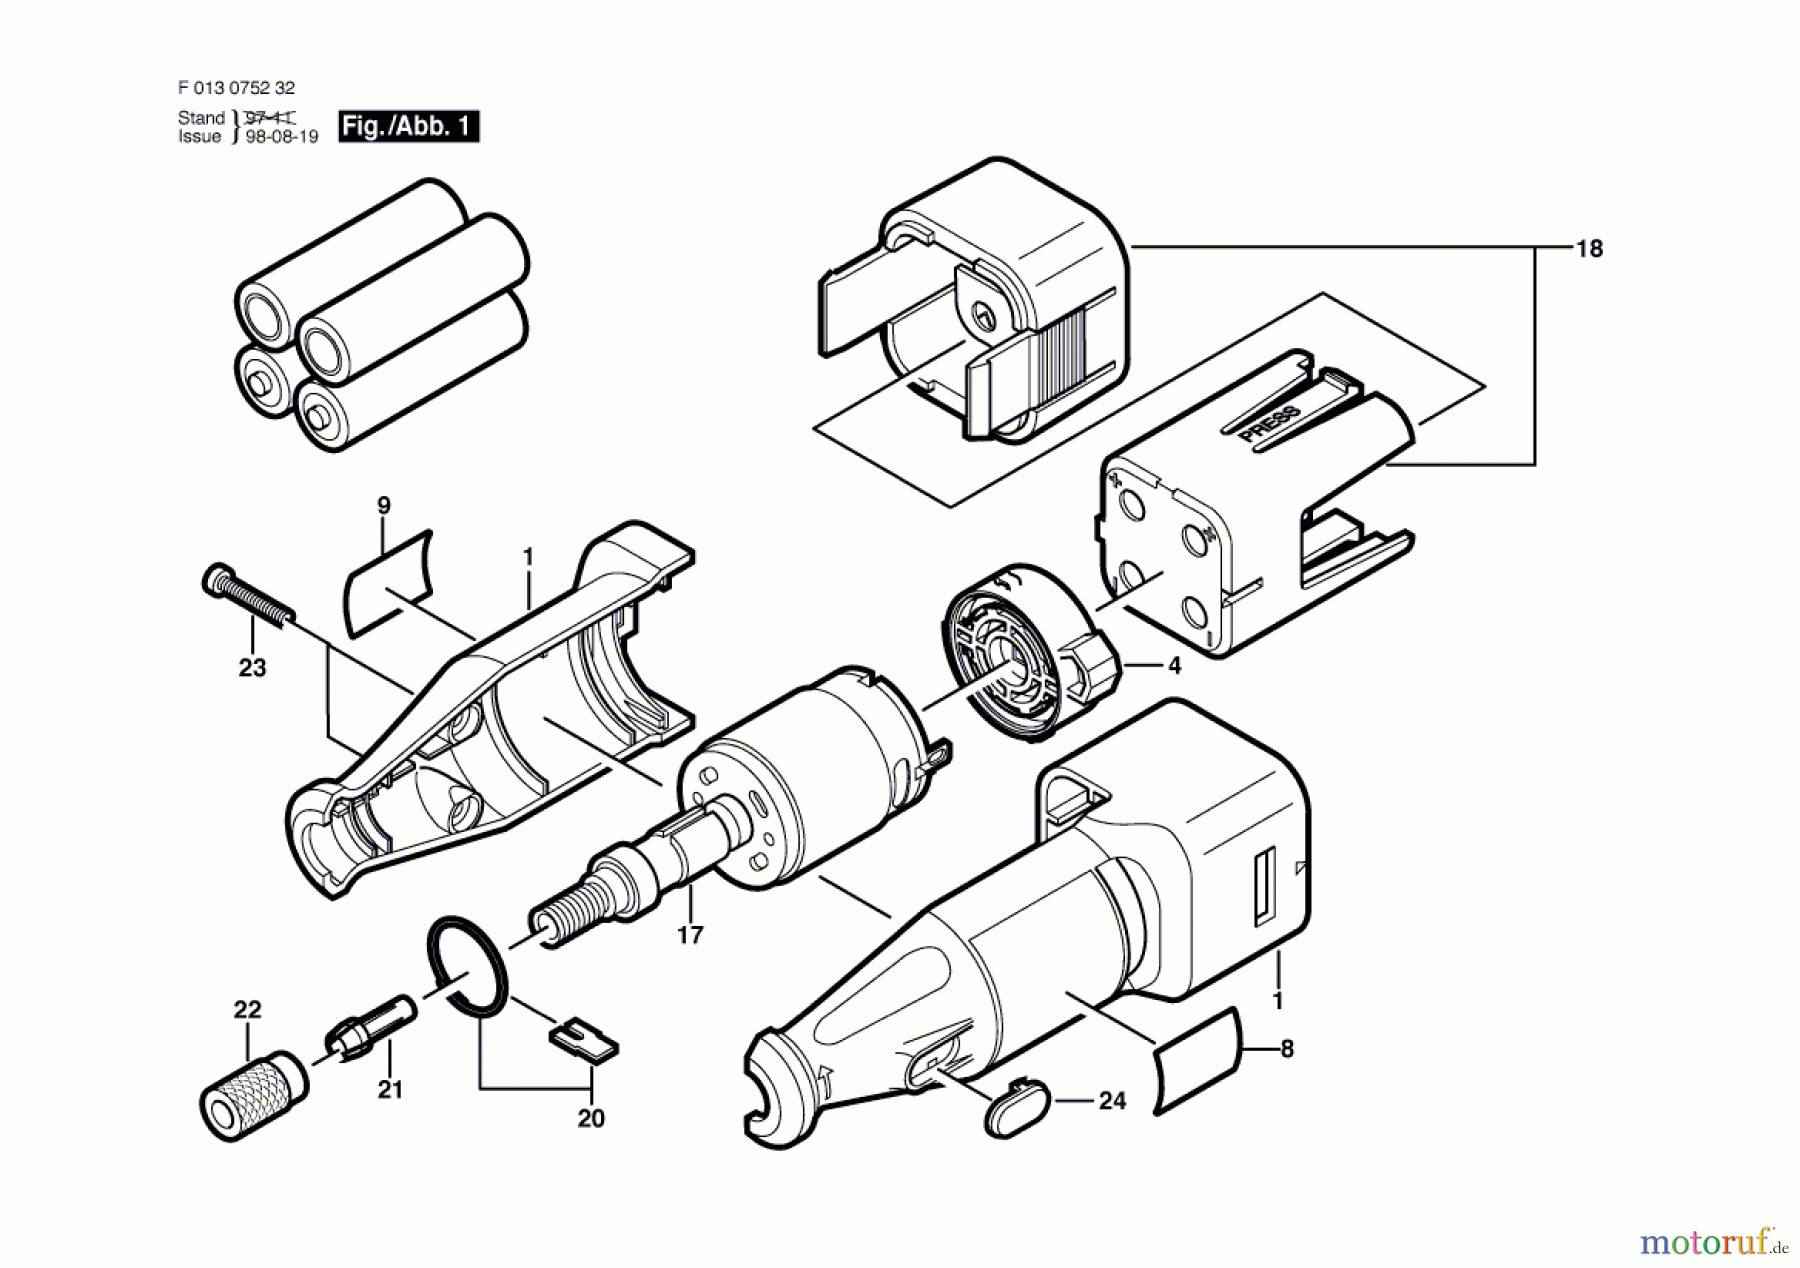  Bosch Werkzeug Drehwerkzeug 752 Seite 1